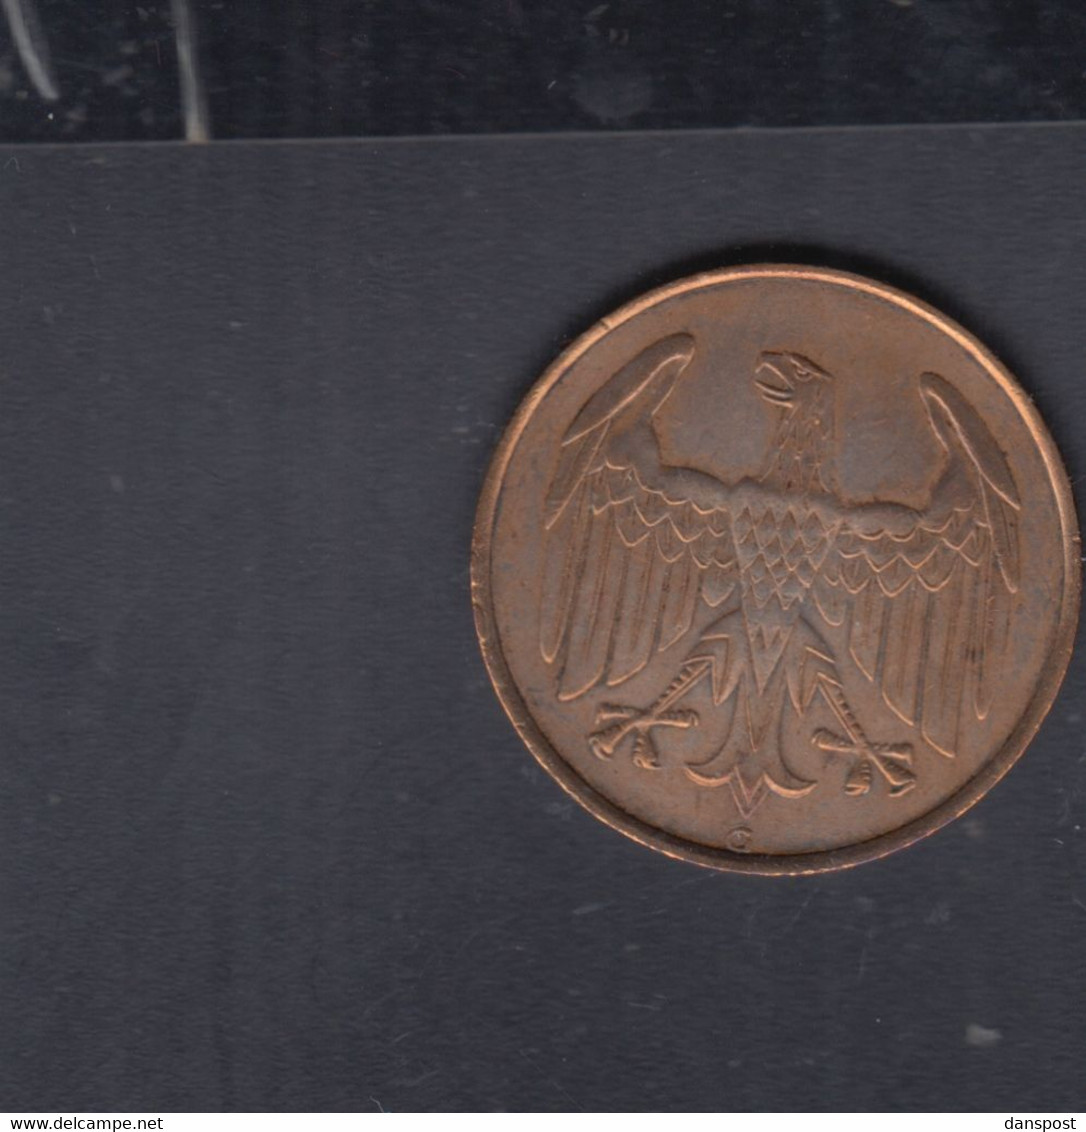 Dt. Reich 4 Pfennig 1932 G - 4 Reichspfennig